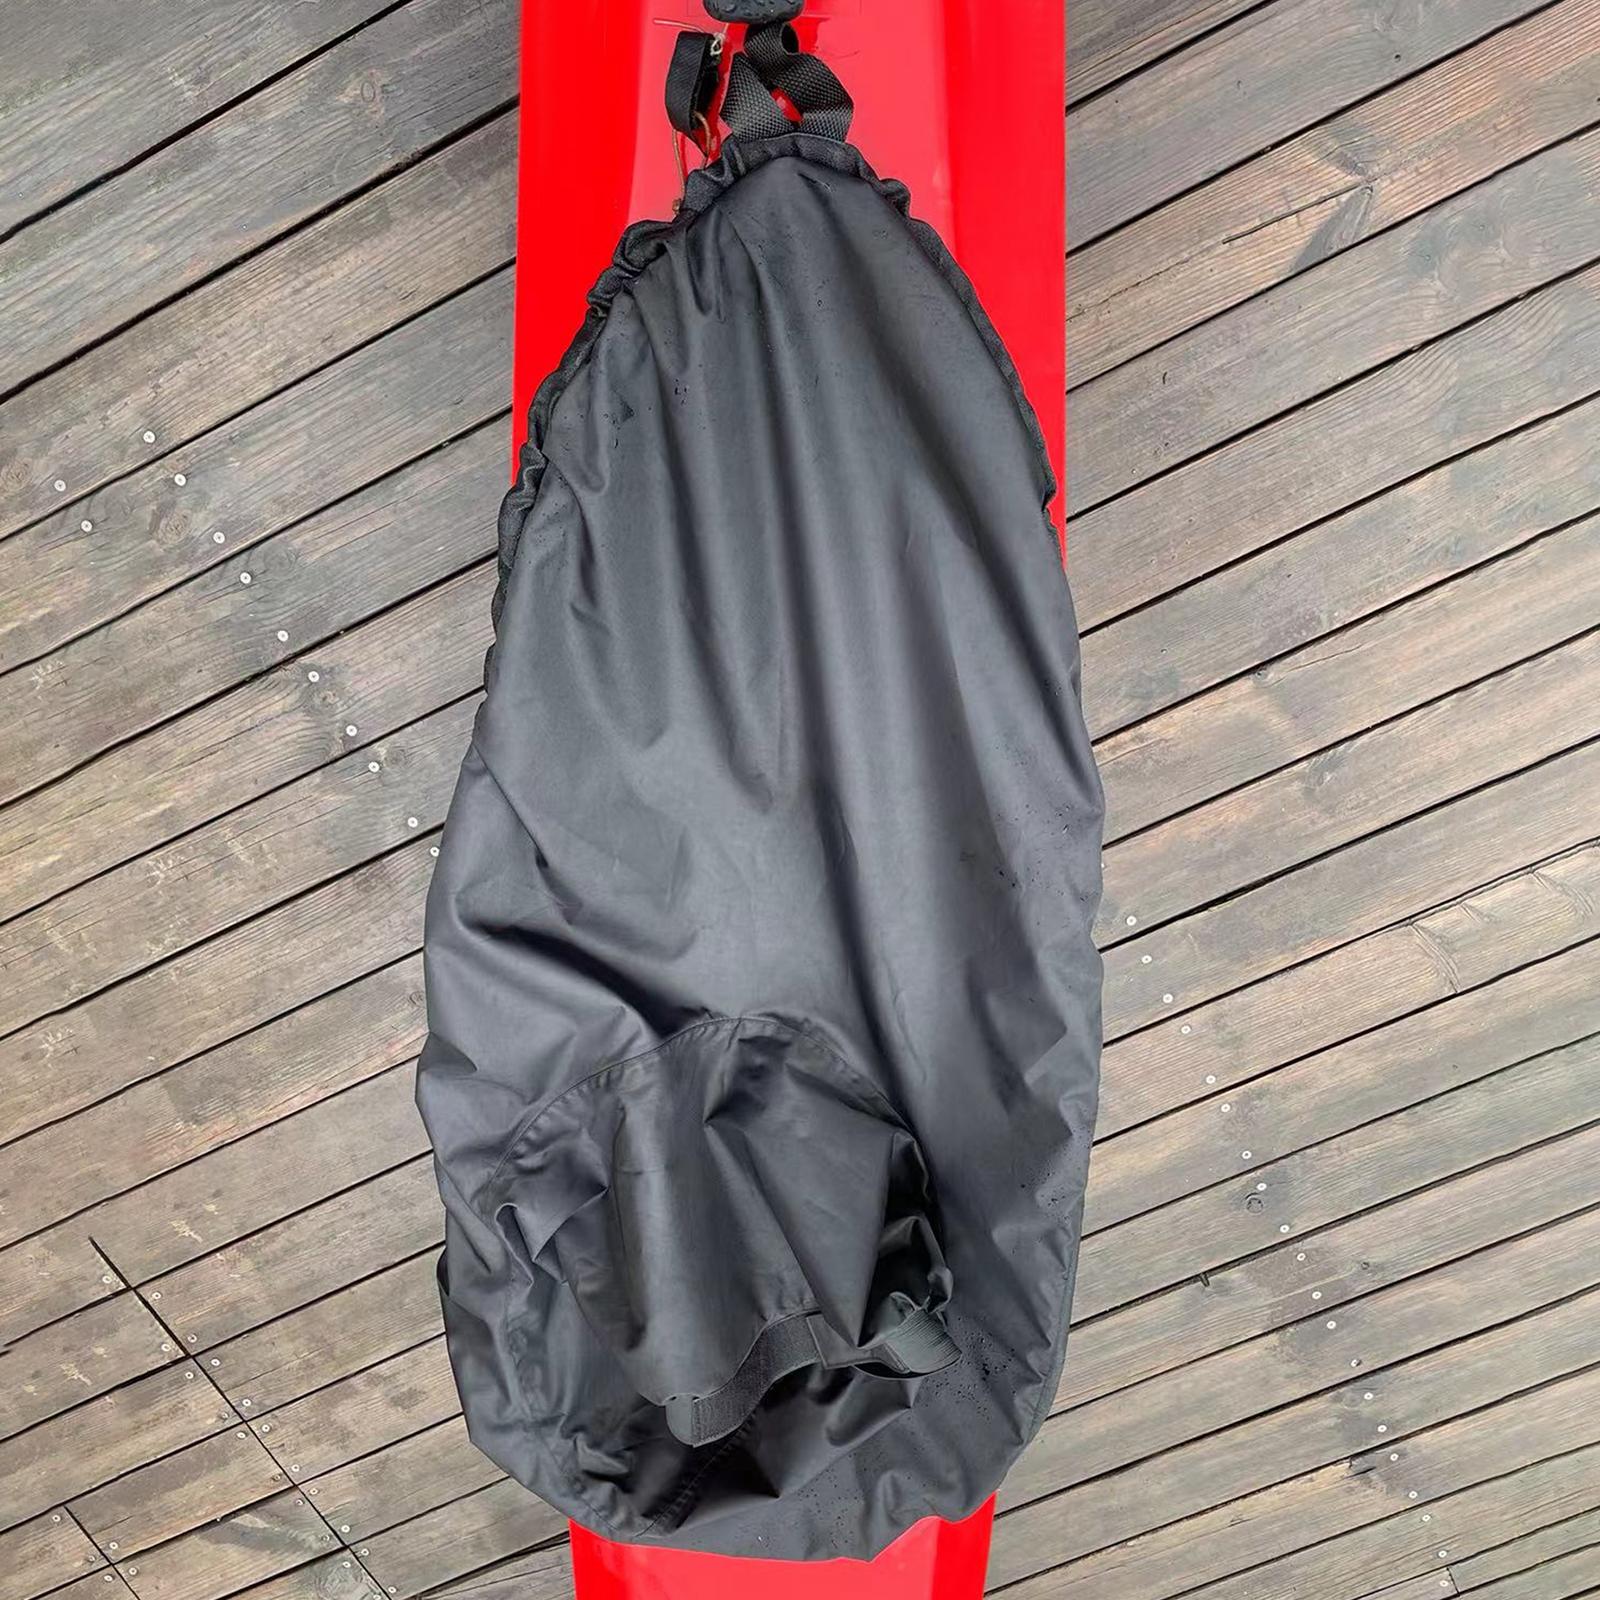 Kayak Spray Skirt Waterproof Water Sports for Kayaking Boating Paddling